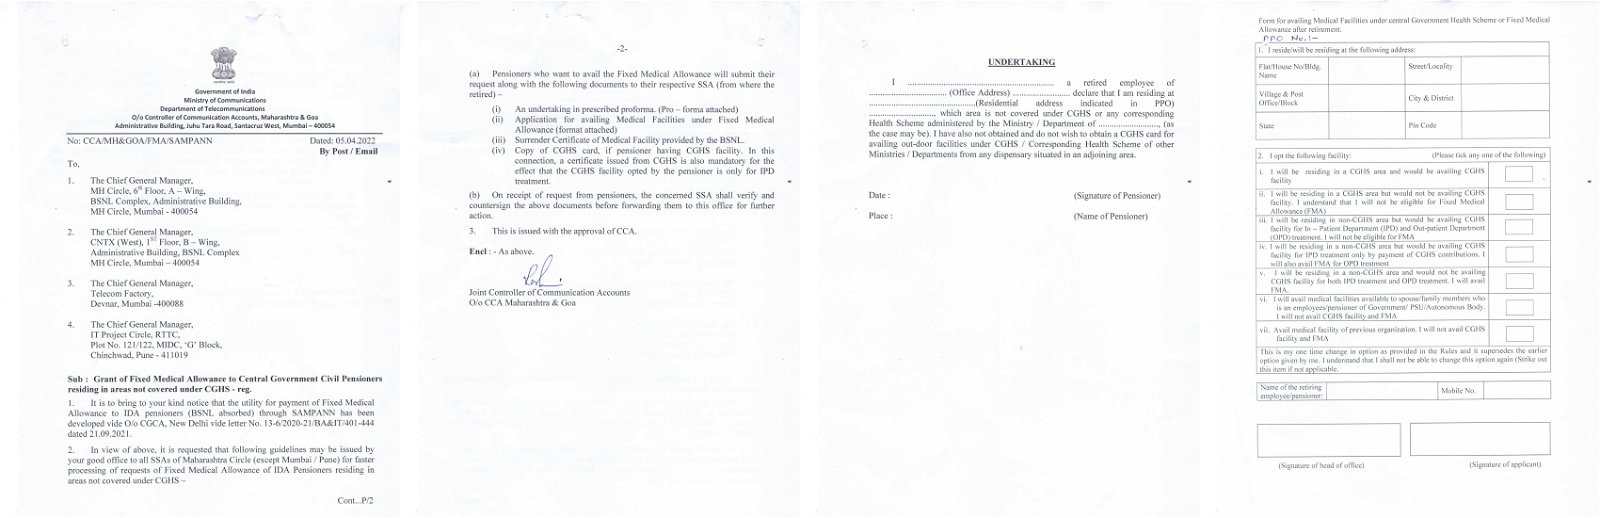 CCA letter for FMA-1CCA letter for FMA-2CCA letter for FMA-3CCA letter for FMA-4 2